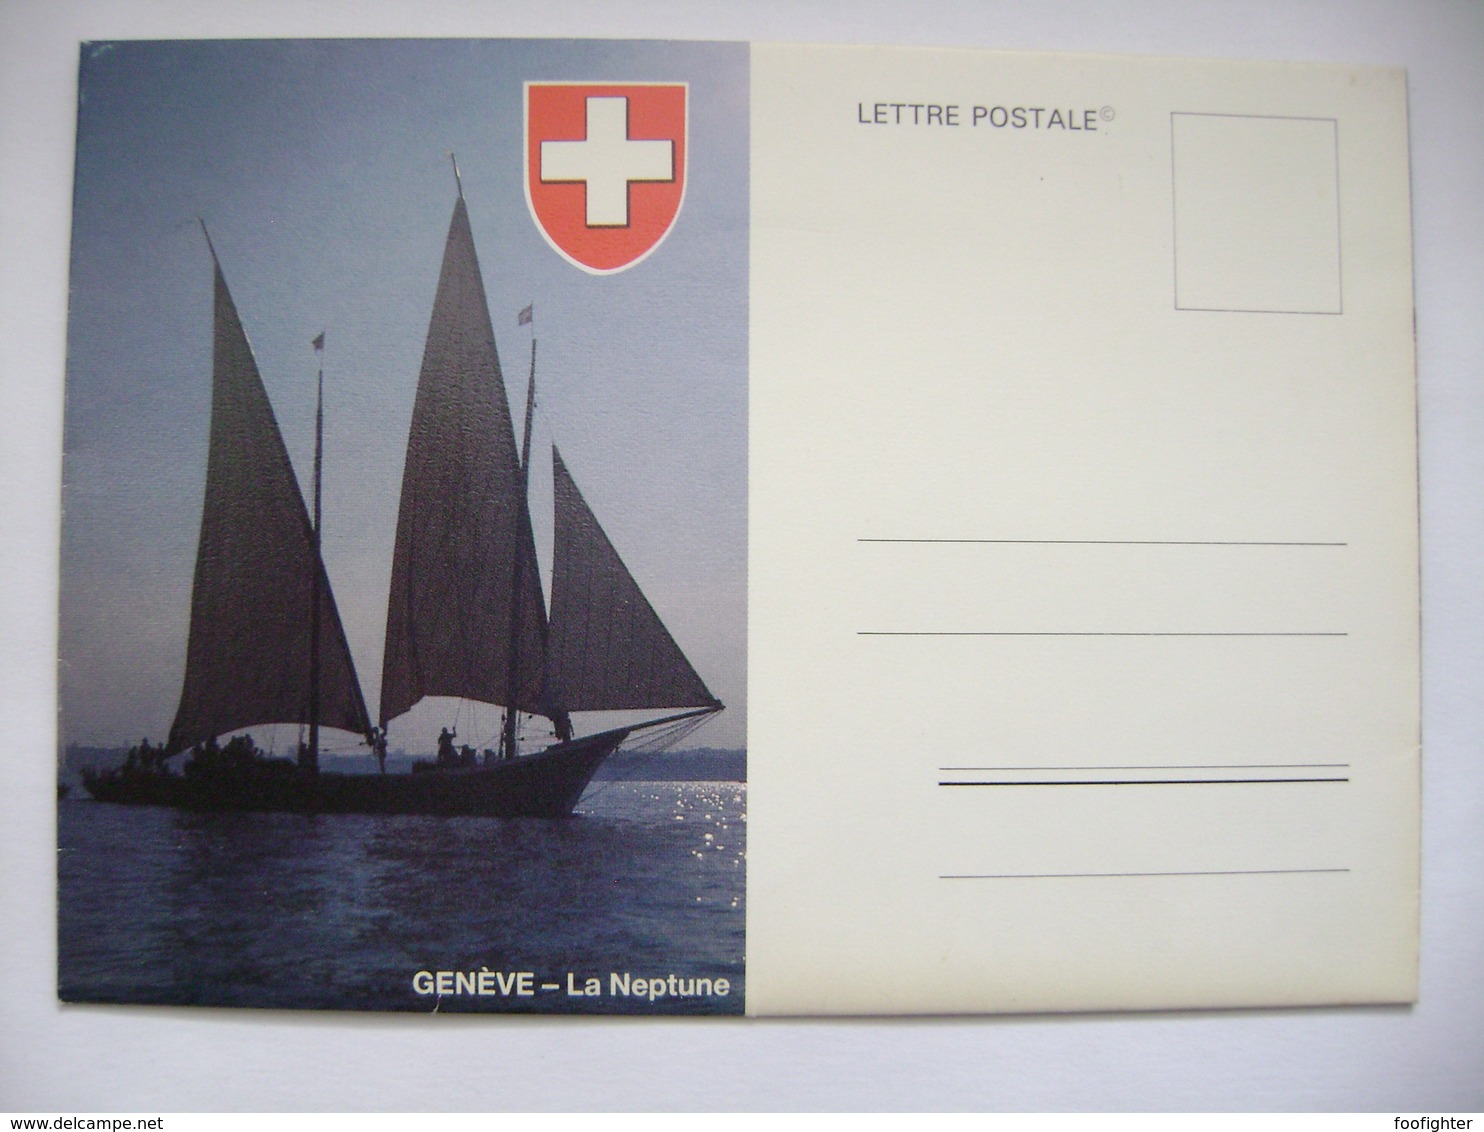 Lettre Postale - Genéve - La Neptune, Lac Léman, Rolle, Nyon, Lausanne, Morges - Cartes Pliantes Unused - Genève